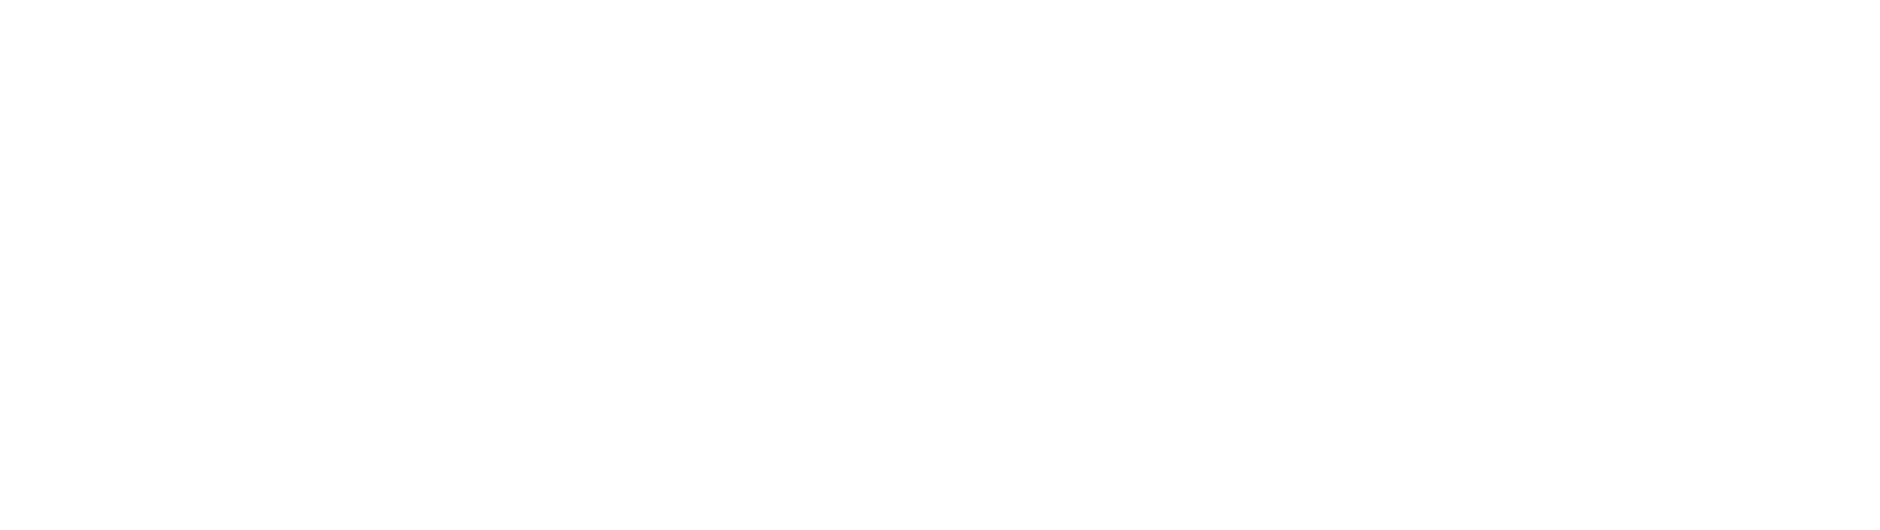 CyberSecur Logo